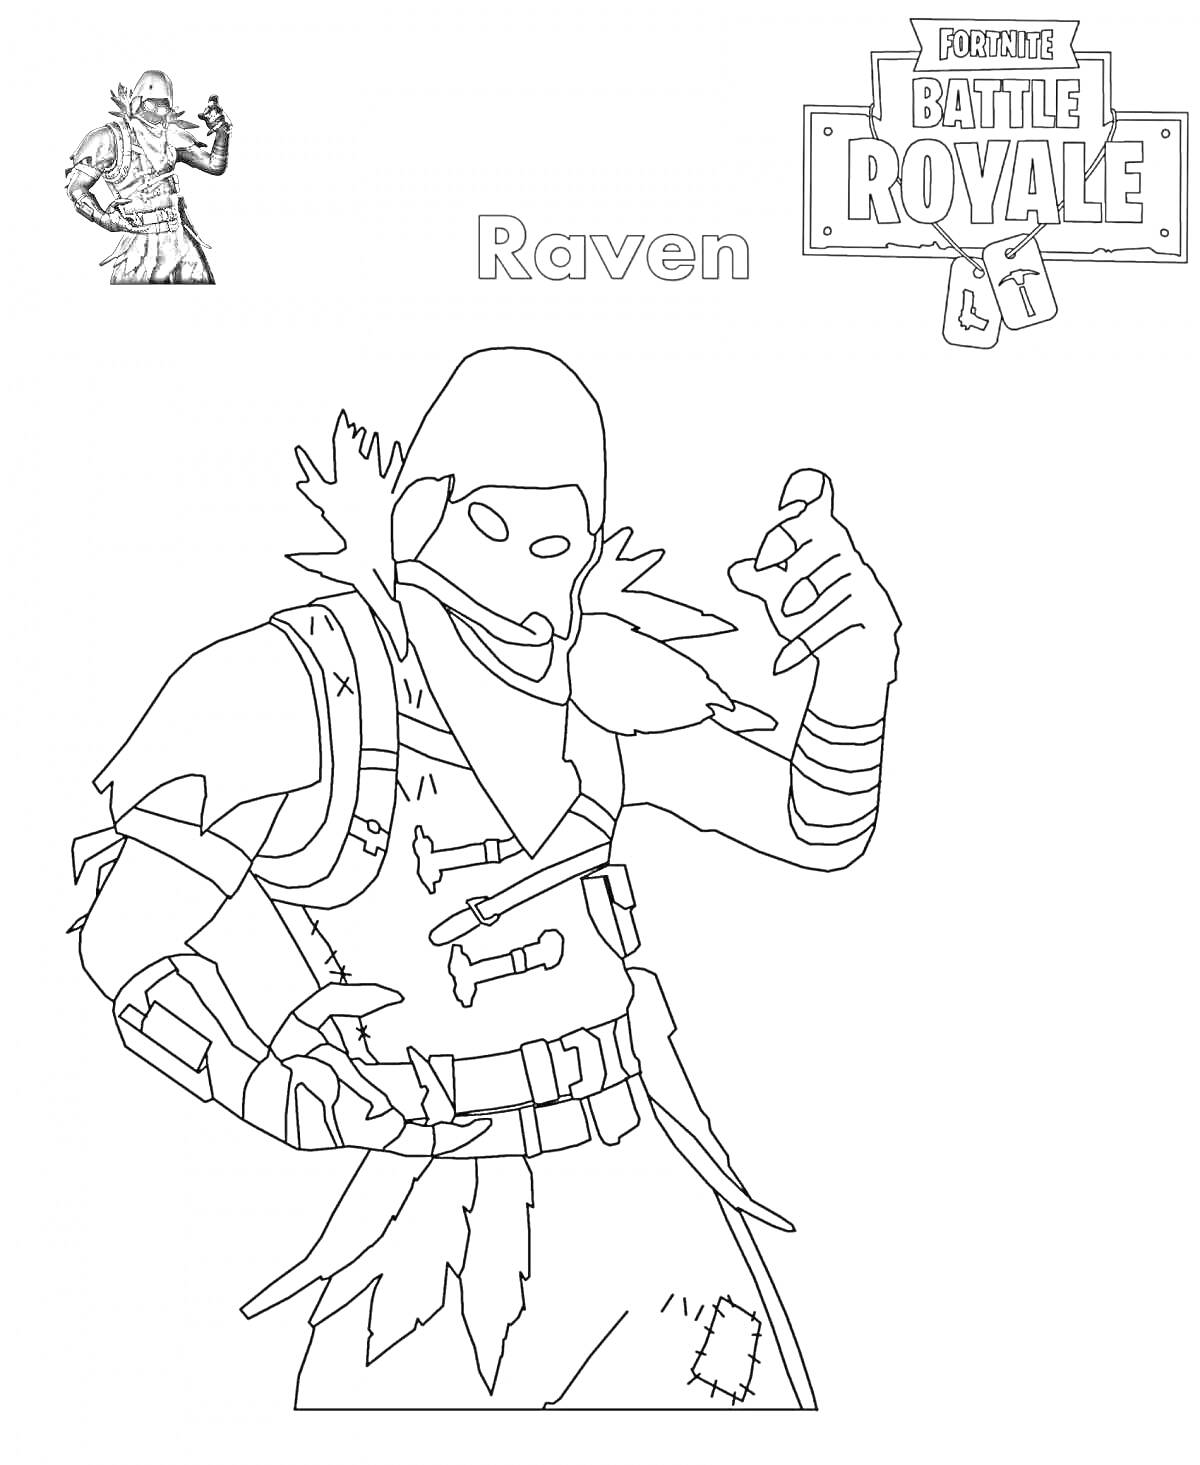 Раскраска Раскраска персонажа Raven из Fortnite Battle Royale, с изображением бойца с капюшоном, бронёй и наплечниками, в позе с поднятой рукой.